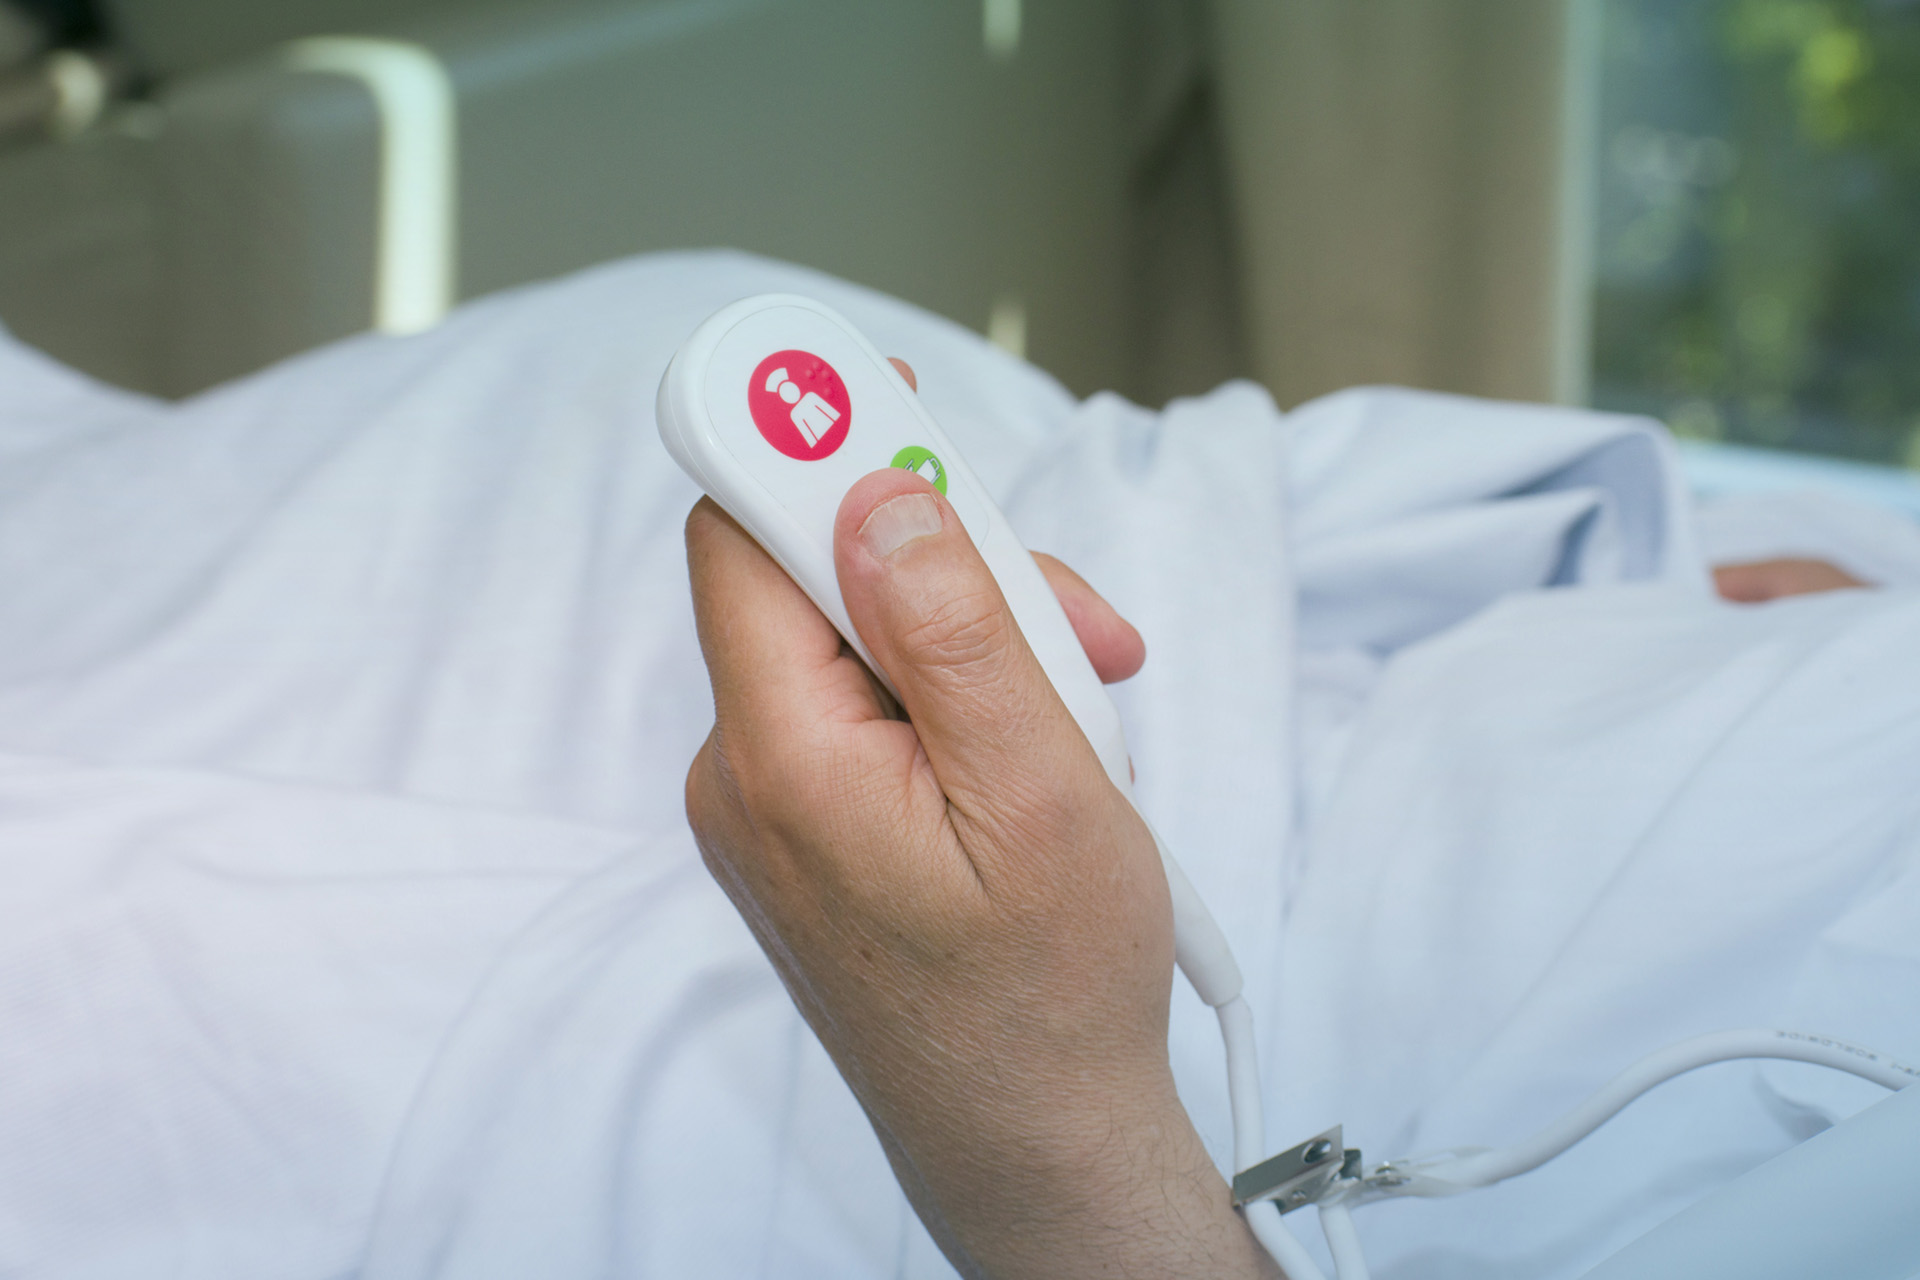 El paciente presiona el botón de ayuda para que la enfermera llame en caso de emergencia en el hospital